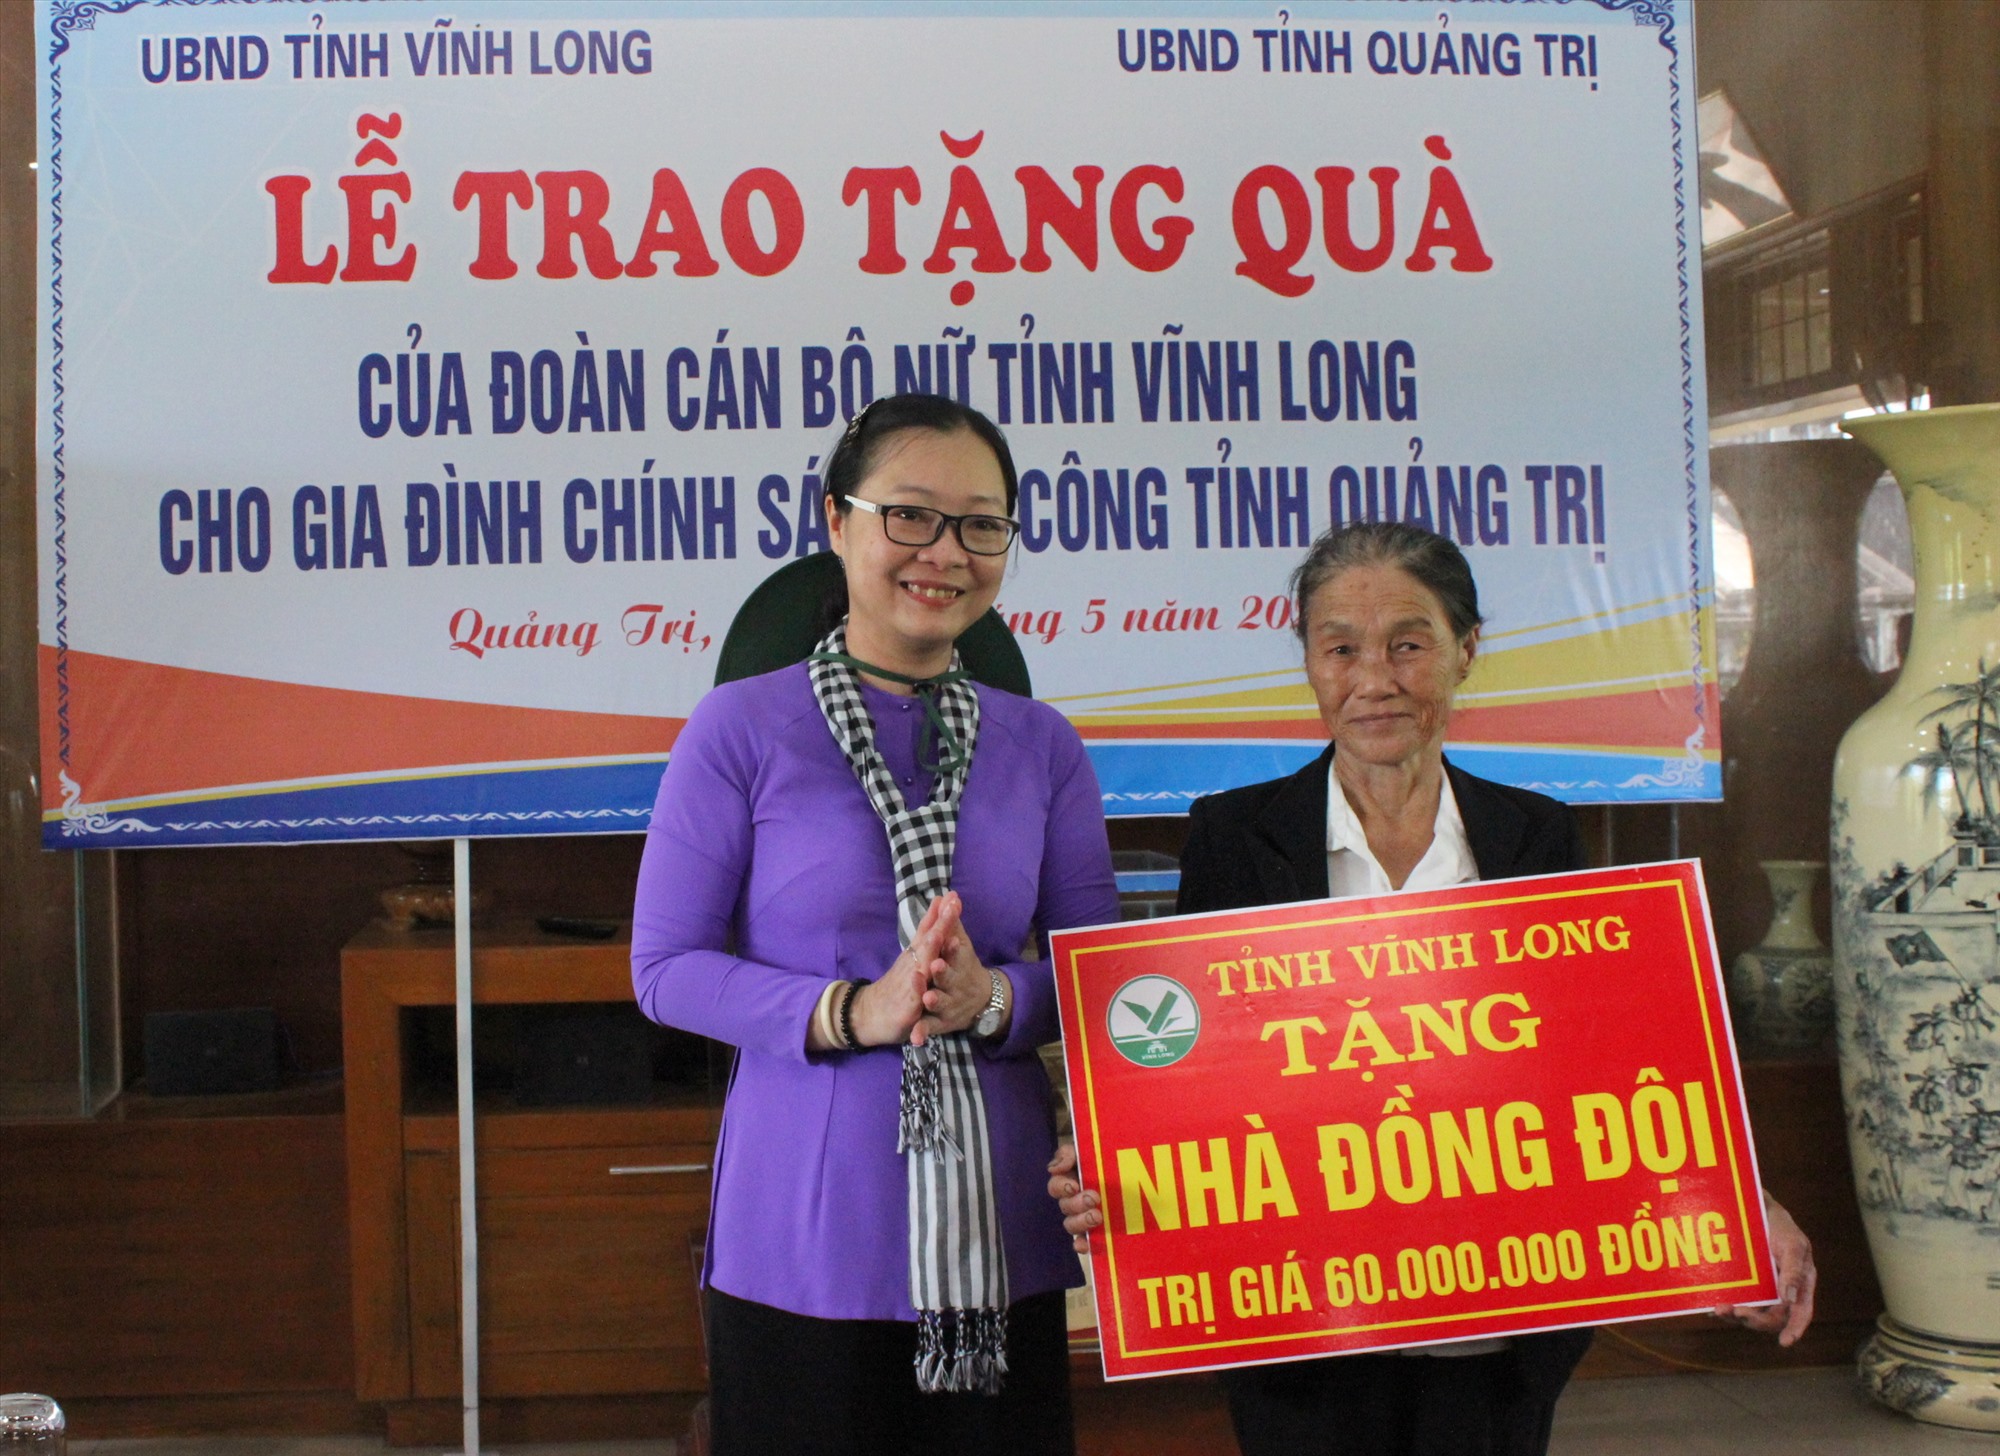 Phó Chủ tịch UBND tỉnh Vĩnh Long Nguyễn Thị Quyên Thanh trao tặng kinh phí xây dựng nhà đồng đội cho gia đình ông Phan Văn Cọi - Ảnh: K.S